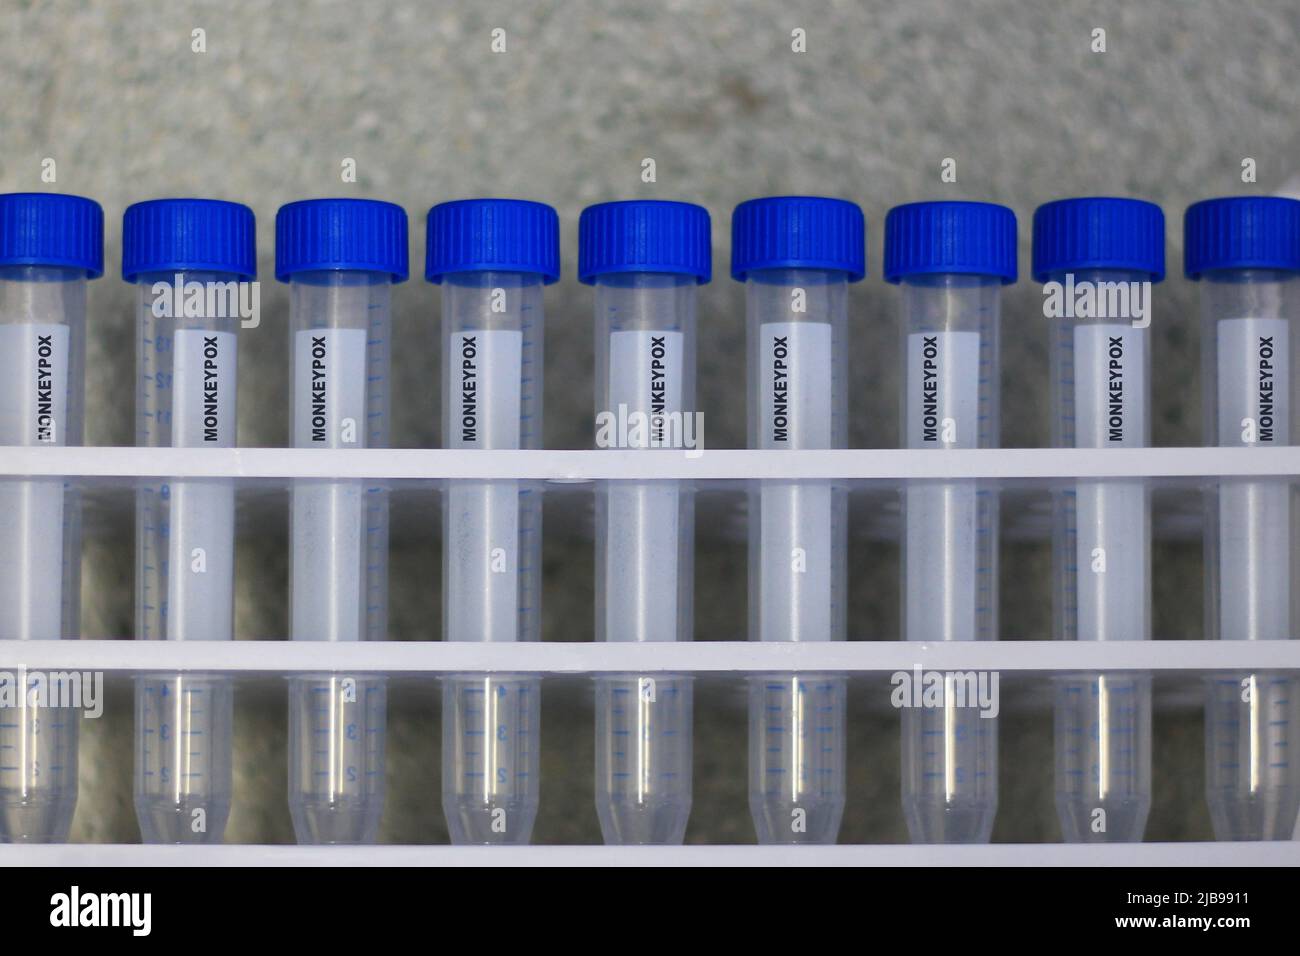 Le tube de laboratoire montre le virus de la variole du singe Banque D'Images